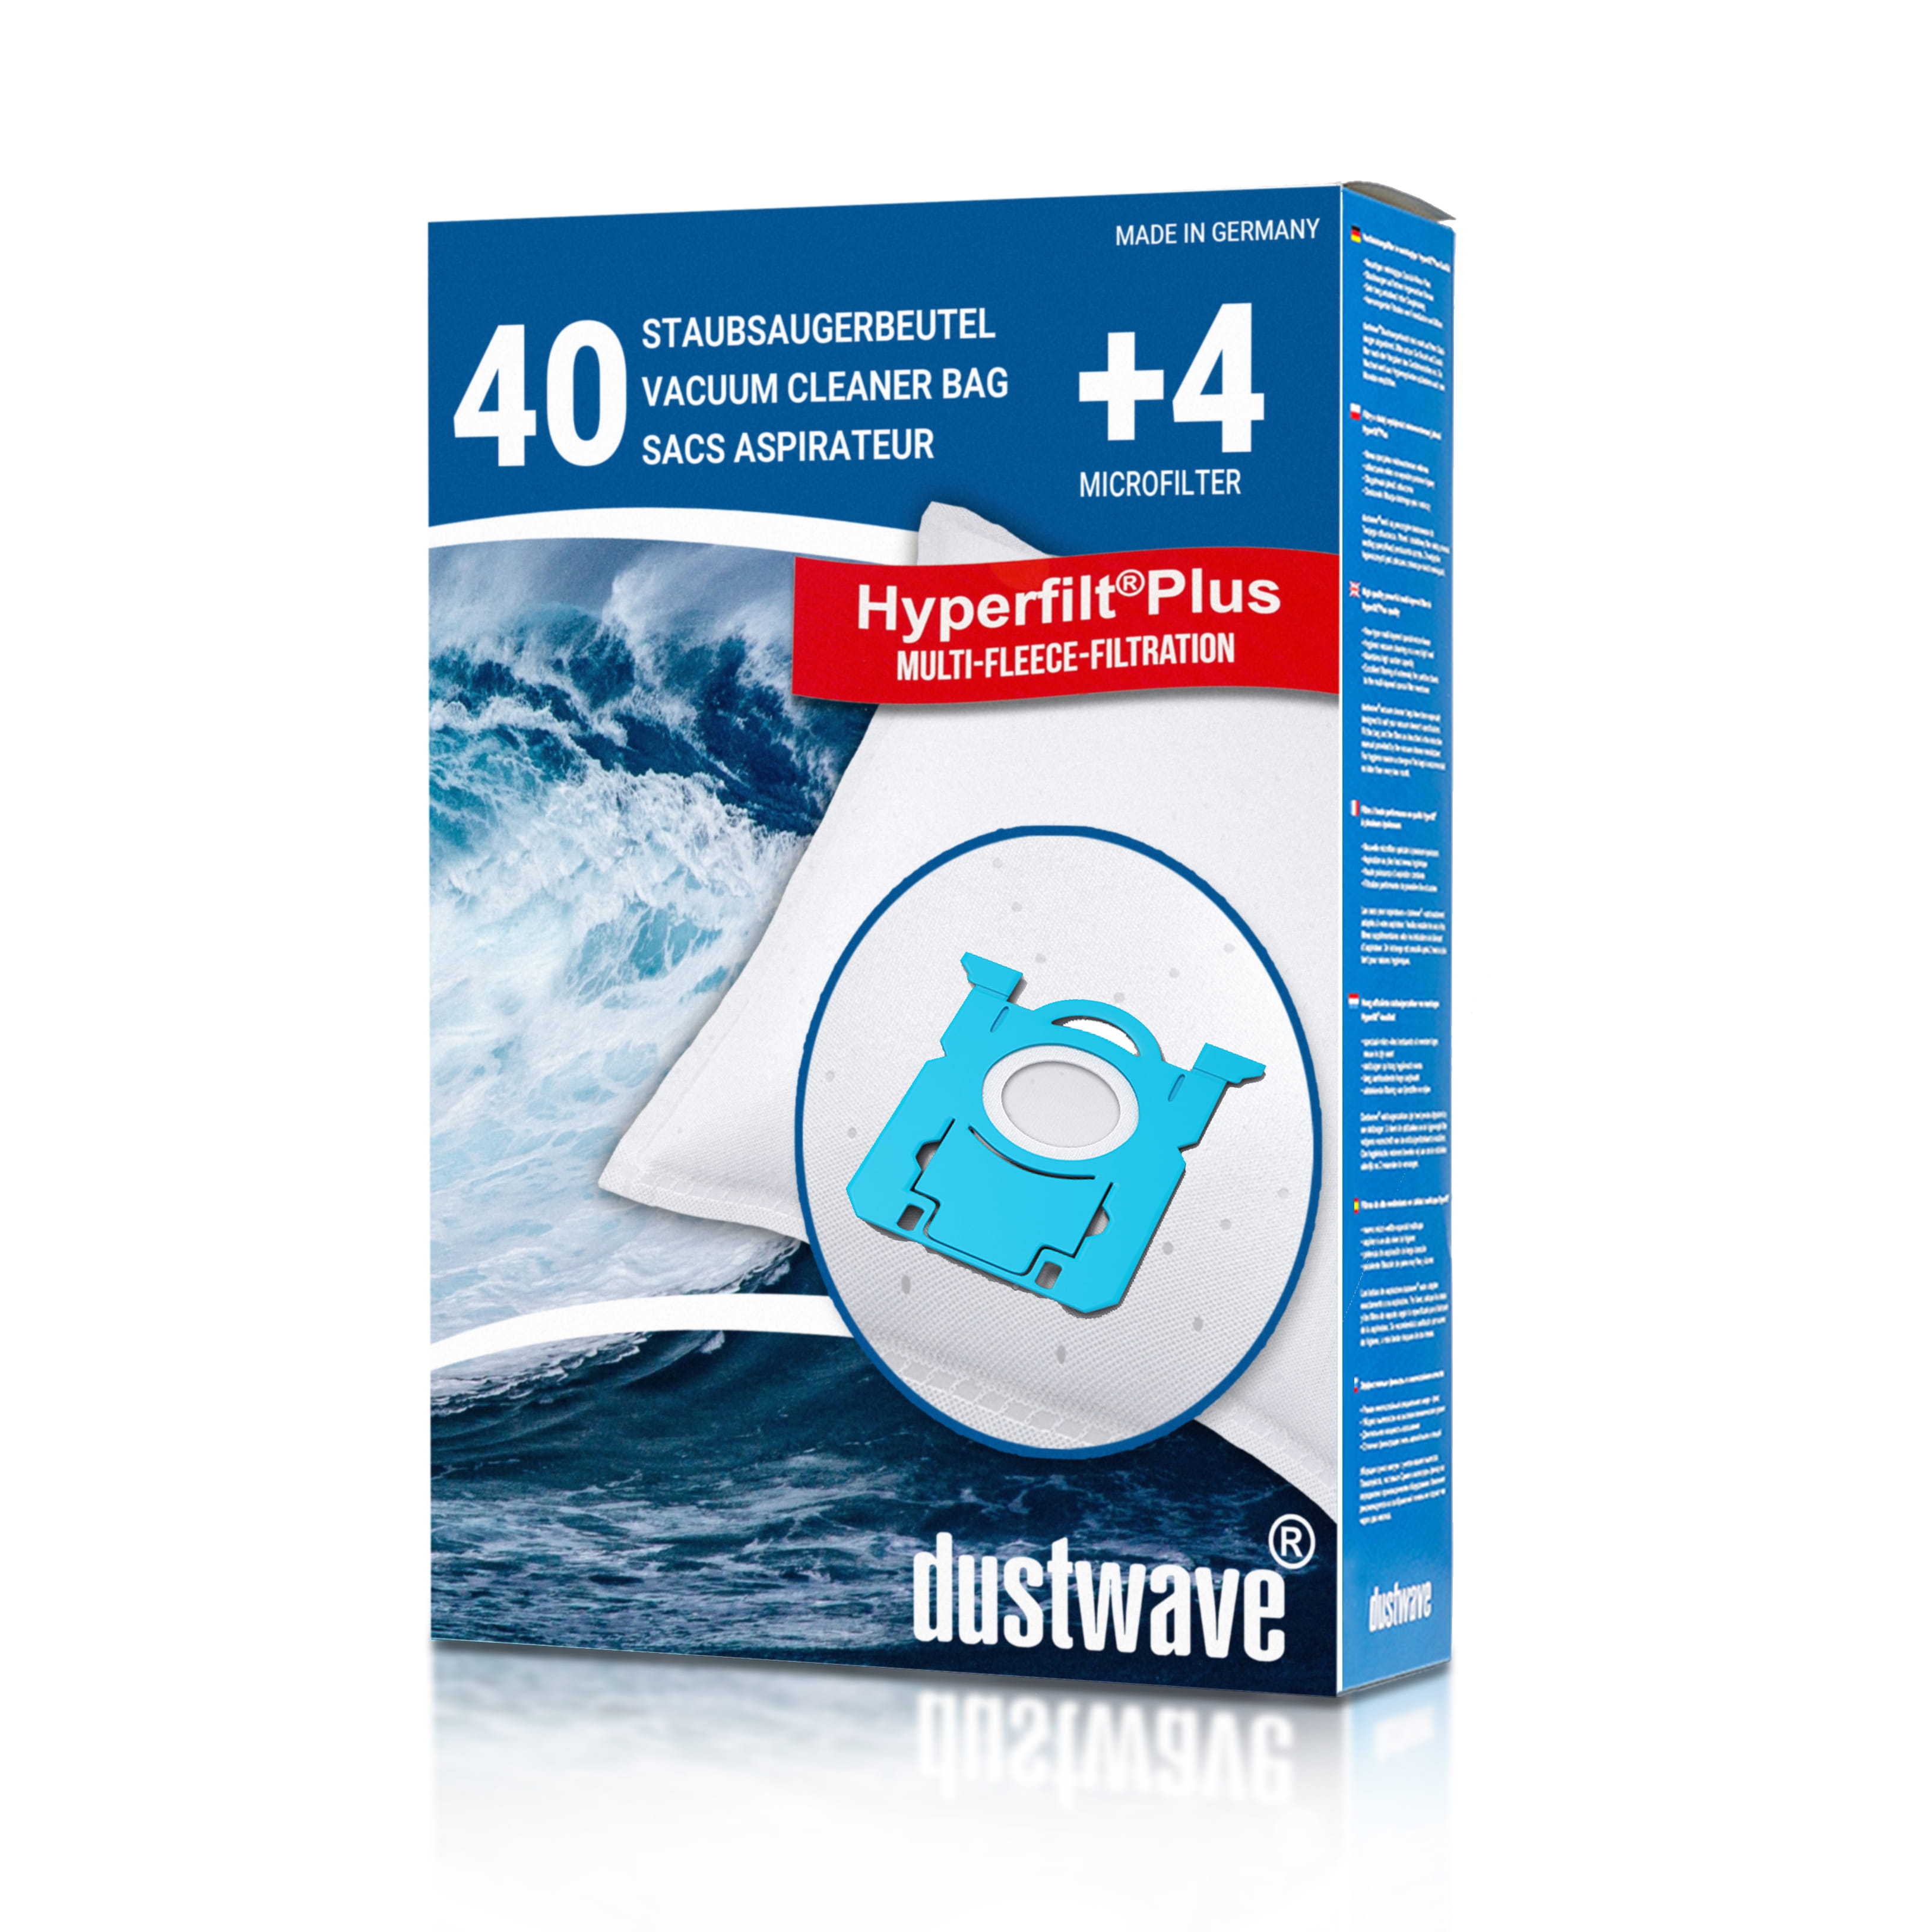 Dustwave® 40 Staubsaugerbeutel für AEG VX8-2-IW-A - hocheffizient, mehrlagiges Mikrovlies mit Hygieneverschluss - Made in Germany